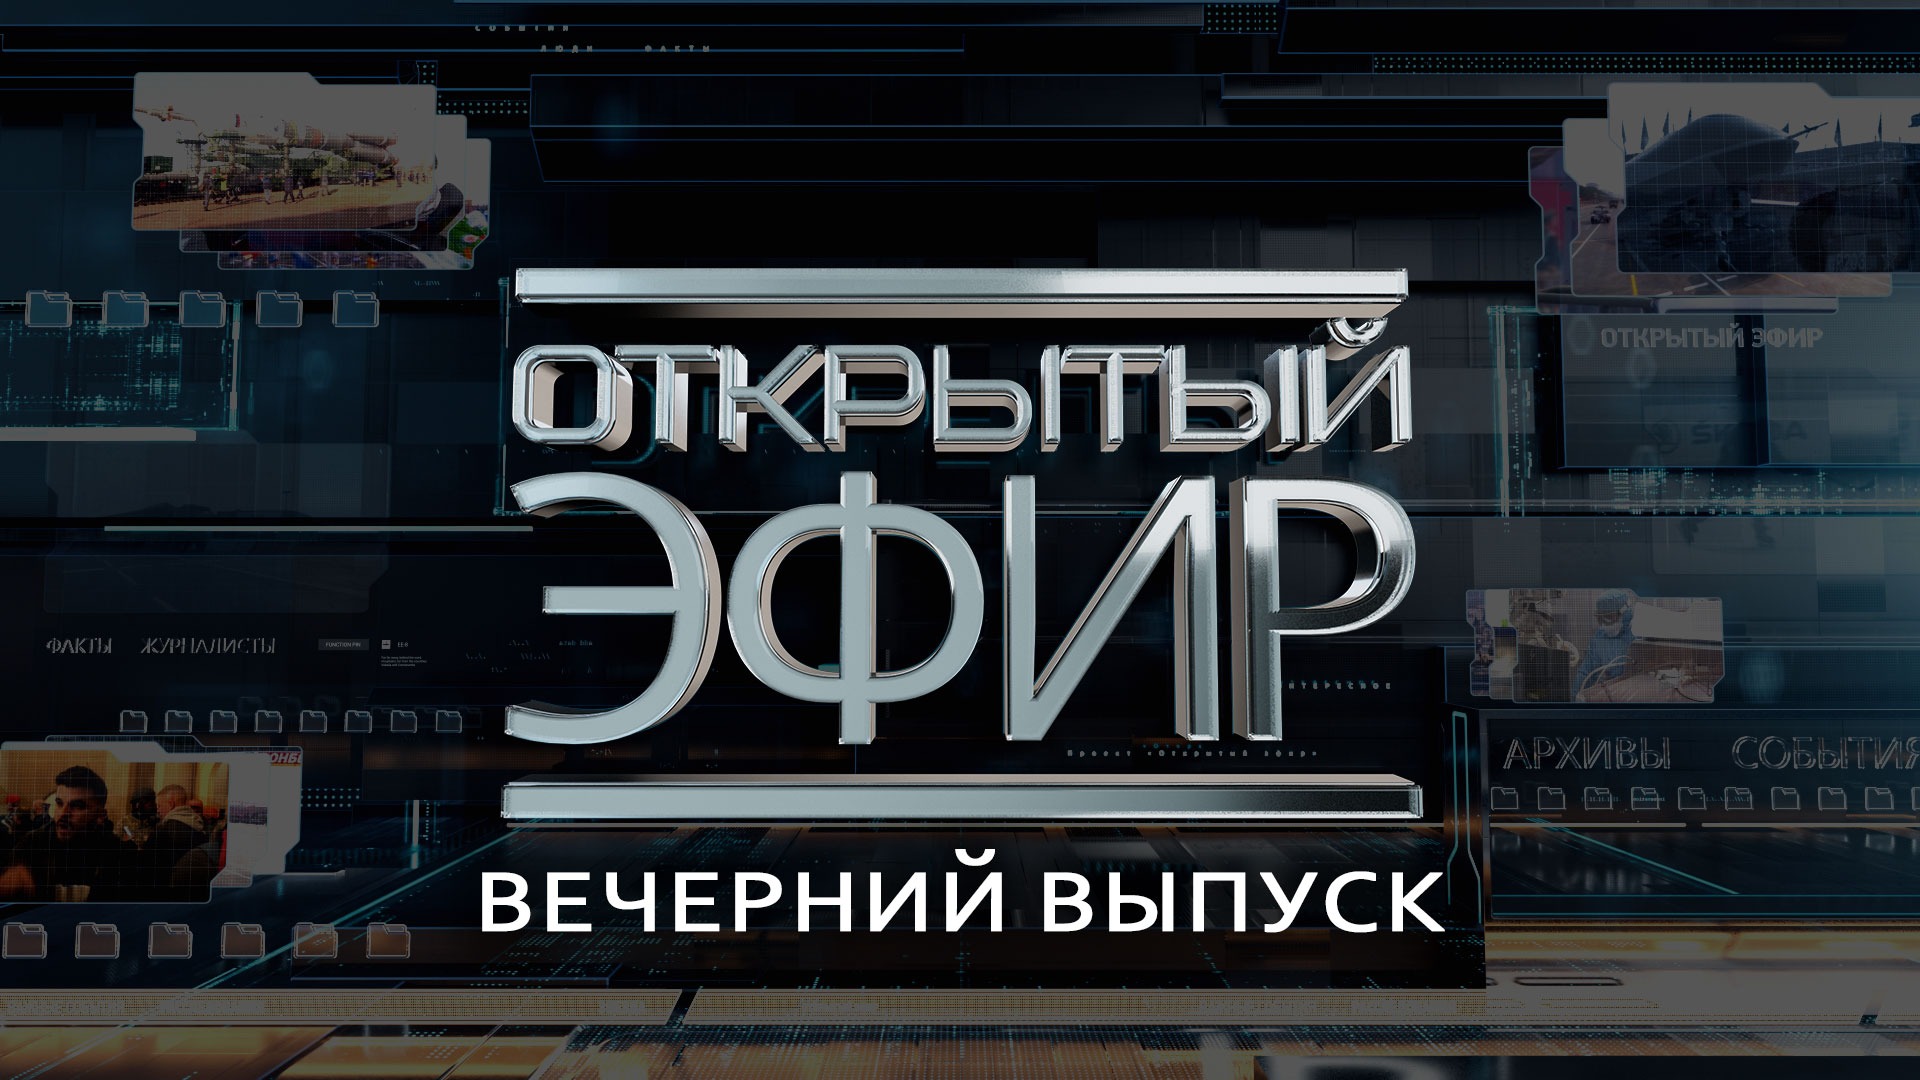 "Открытый эфир" о специальной военной операции в Донбассе. День 278